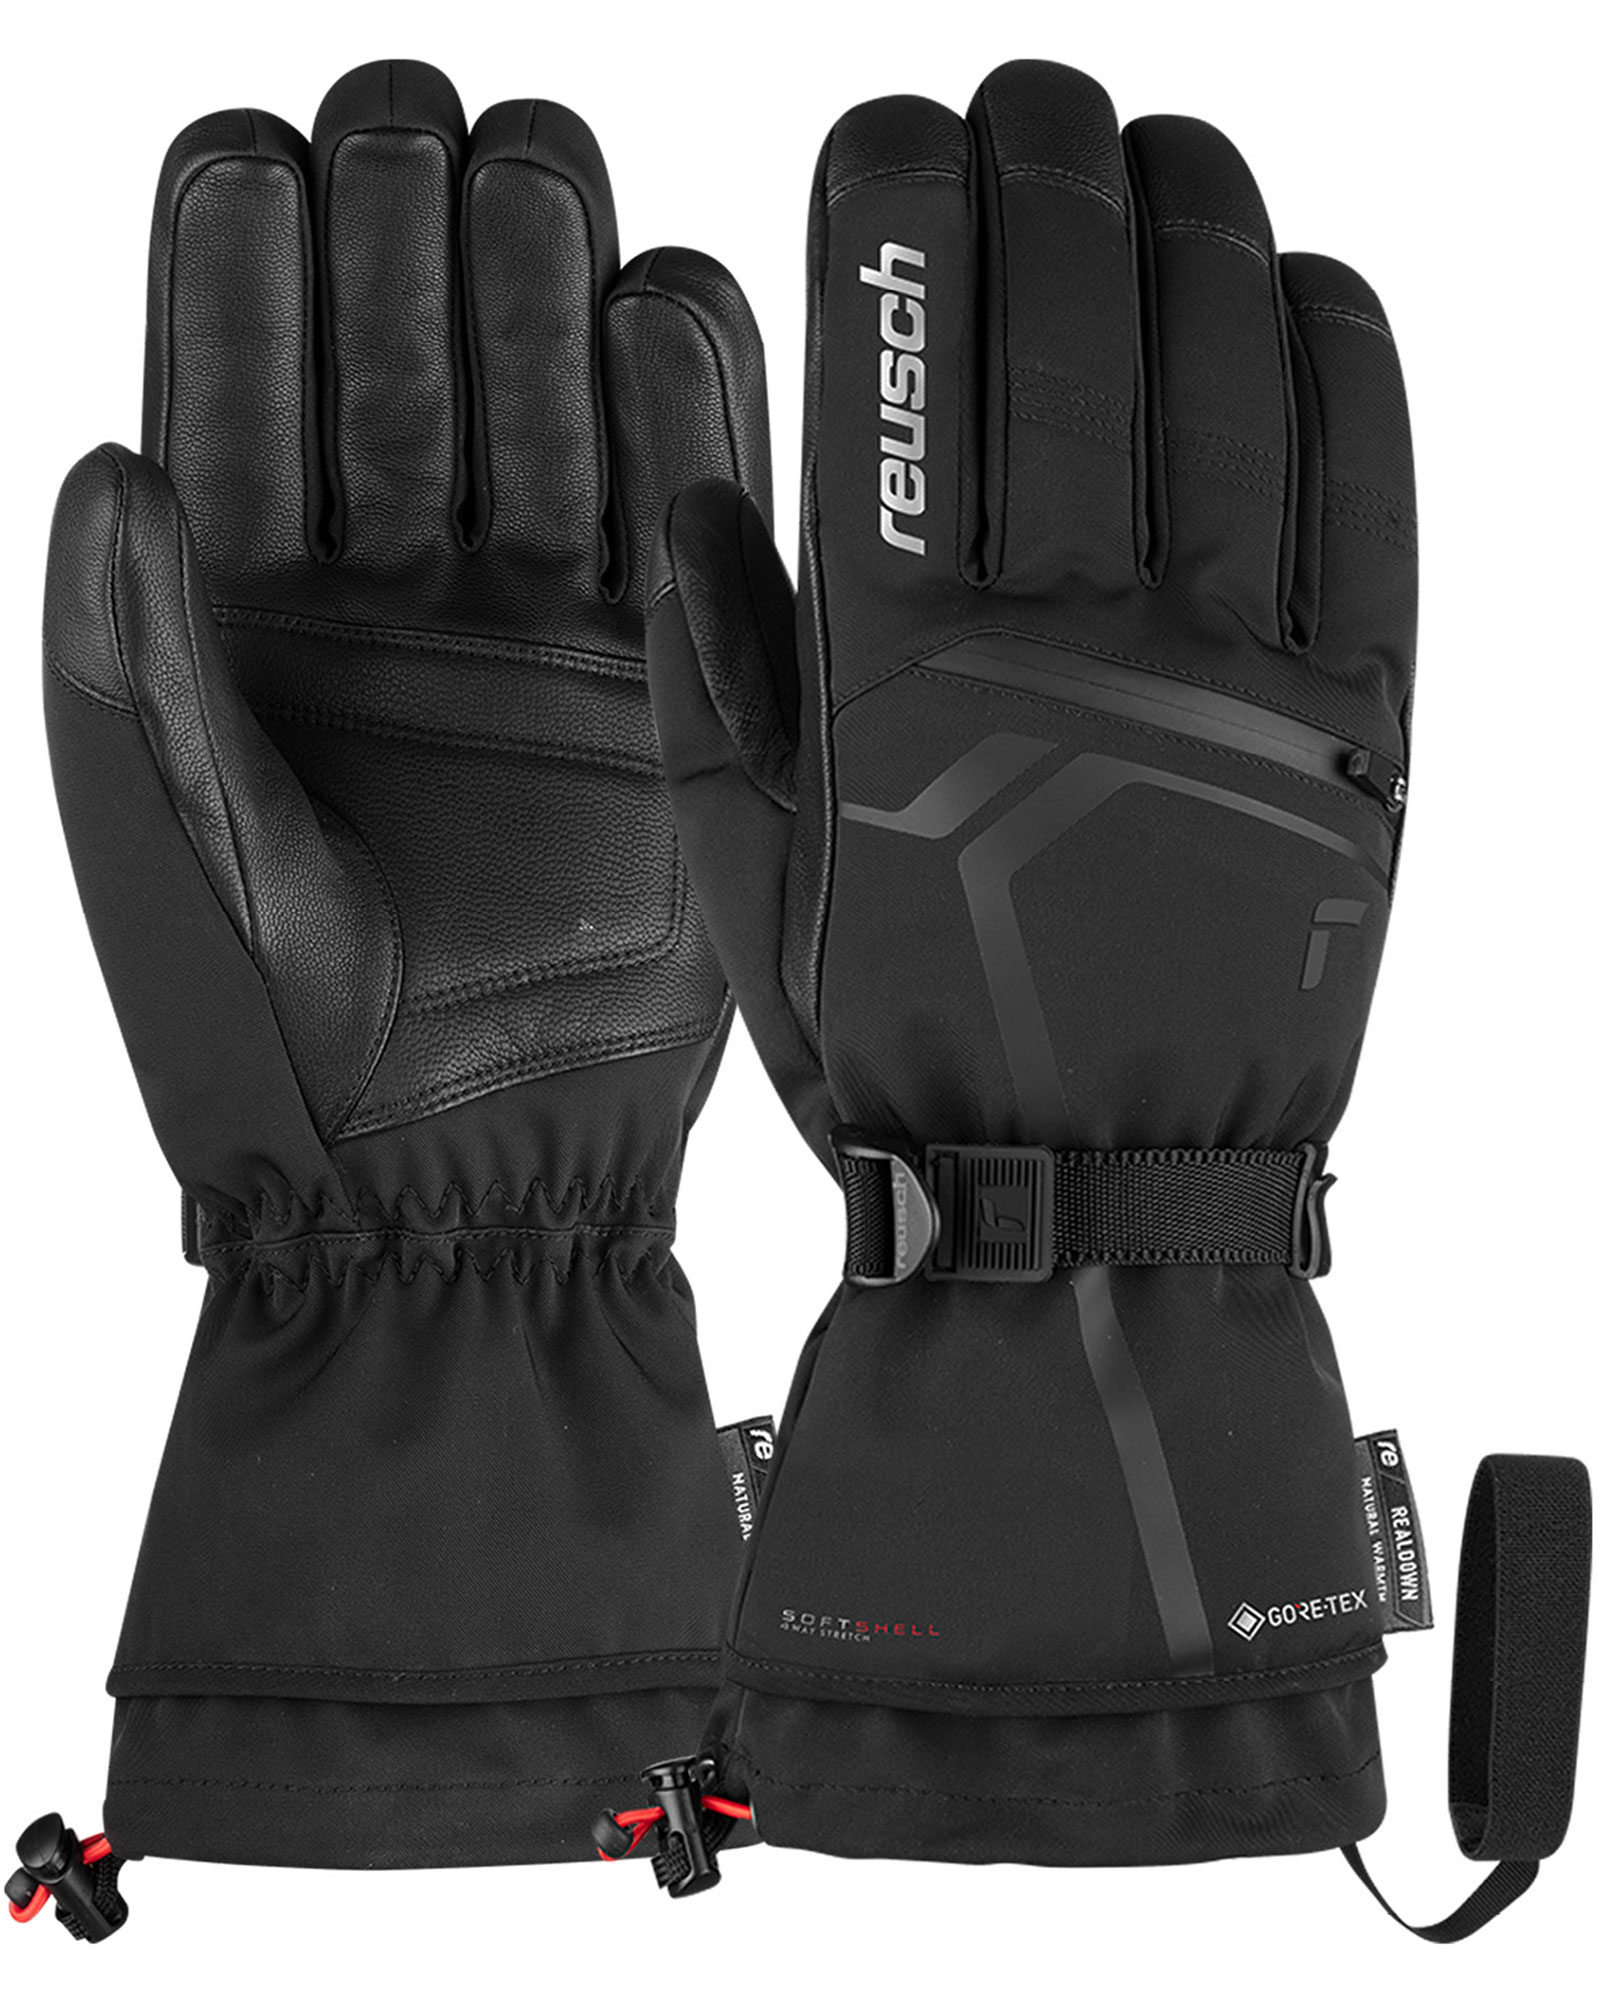 Reusch Down Spirit GORE TEX Men’s Gloves - Black/white Size 8